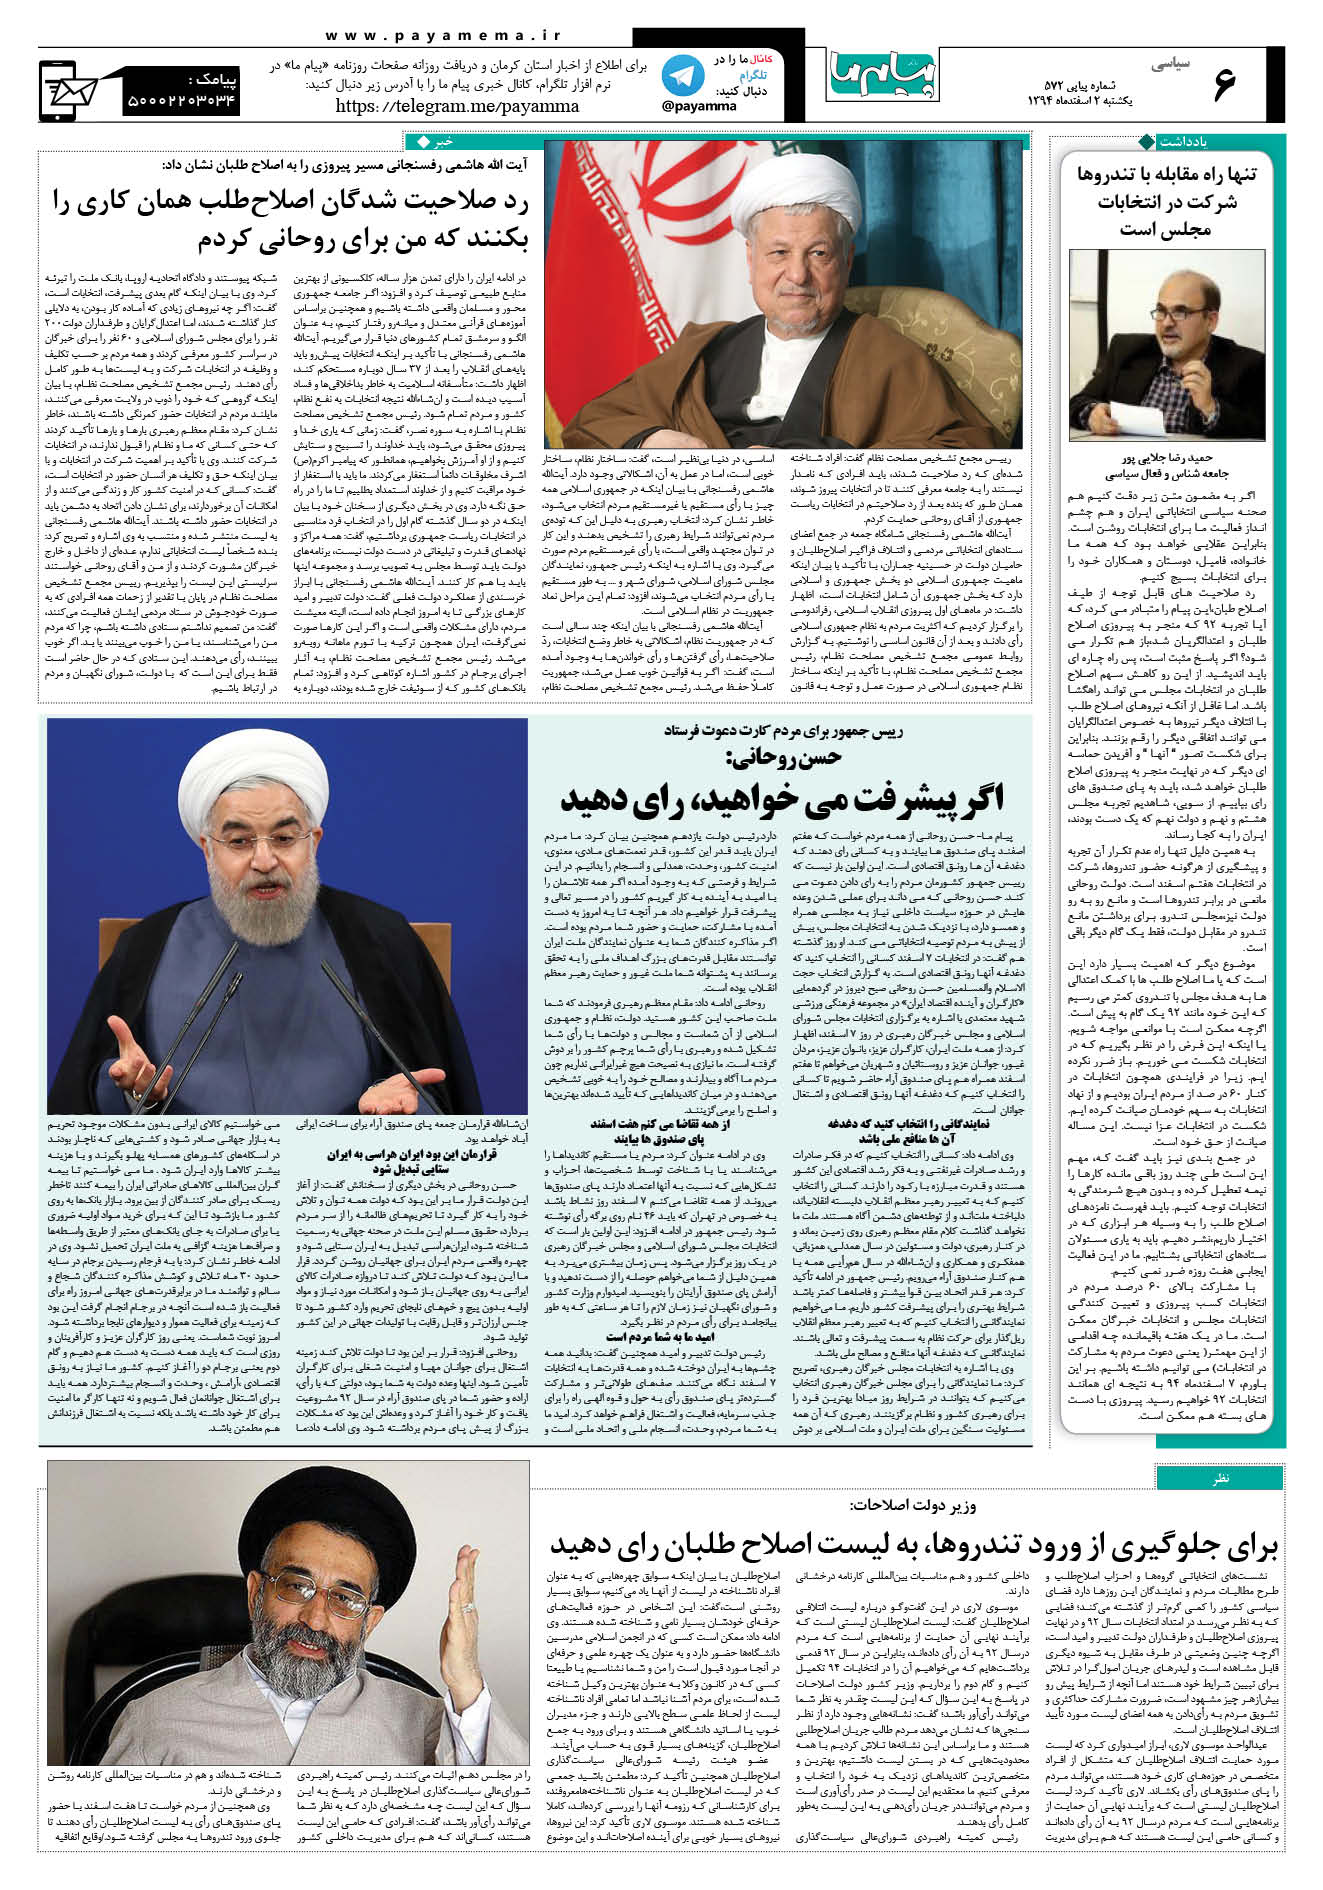 صفحه سیاسی شماره 572 روزنامه پیام ما